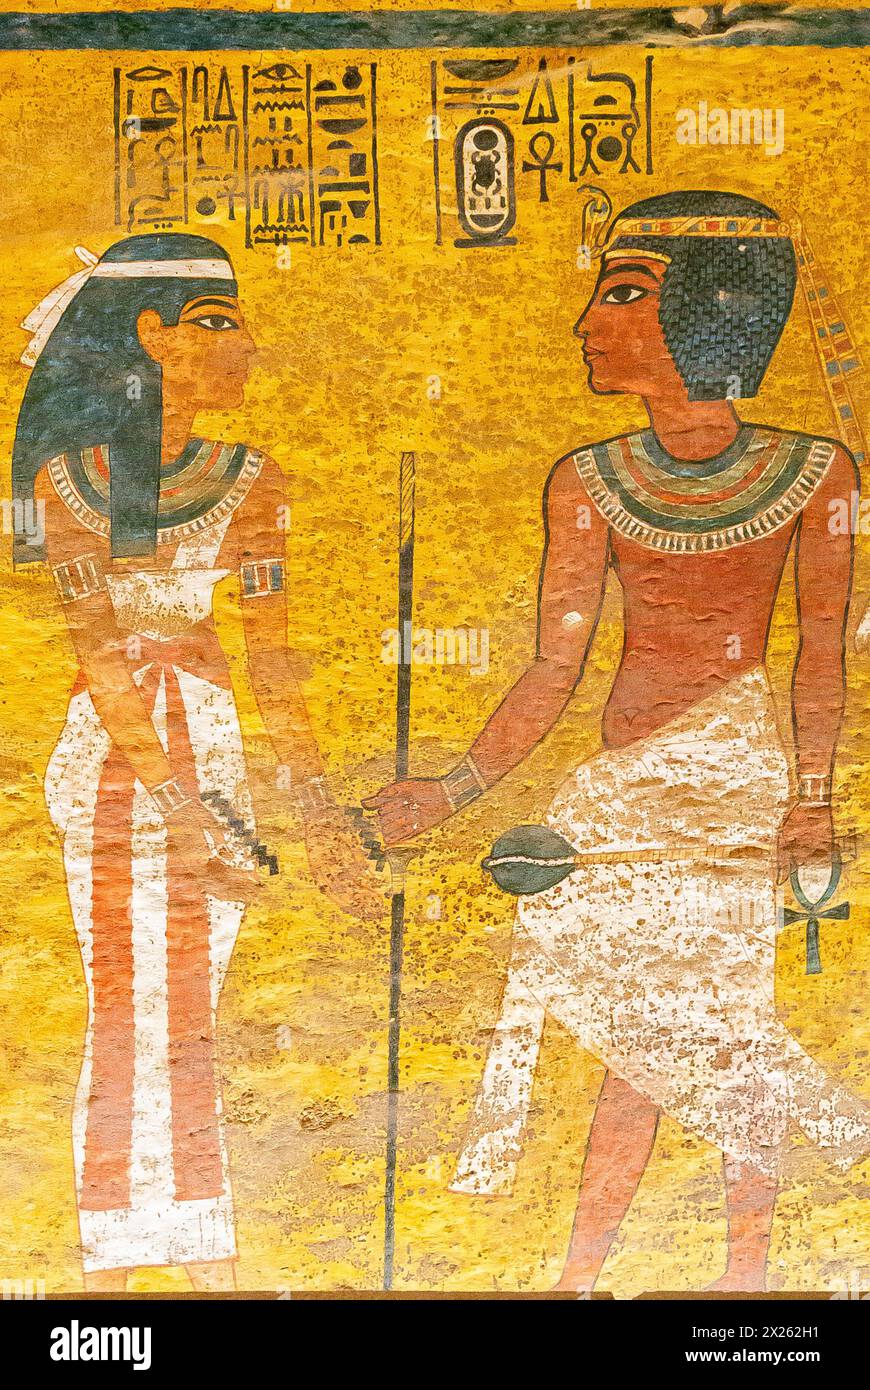 Ägypten, Luxor, Grab von Tutanchamun, Nordwand des Trauerzimmers: Die Nuss-Göttin begrüßt den König, indem sie das Nyny-Ritual durchführt. Stockfoto